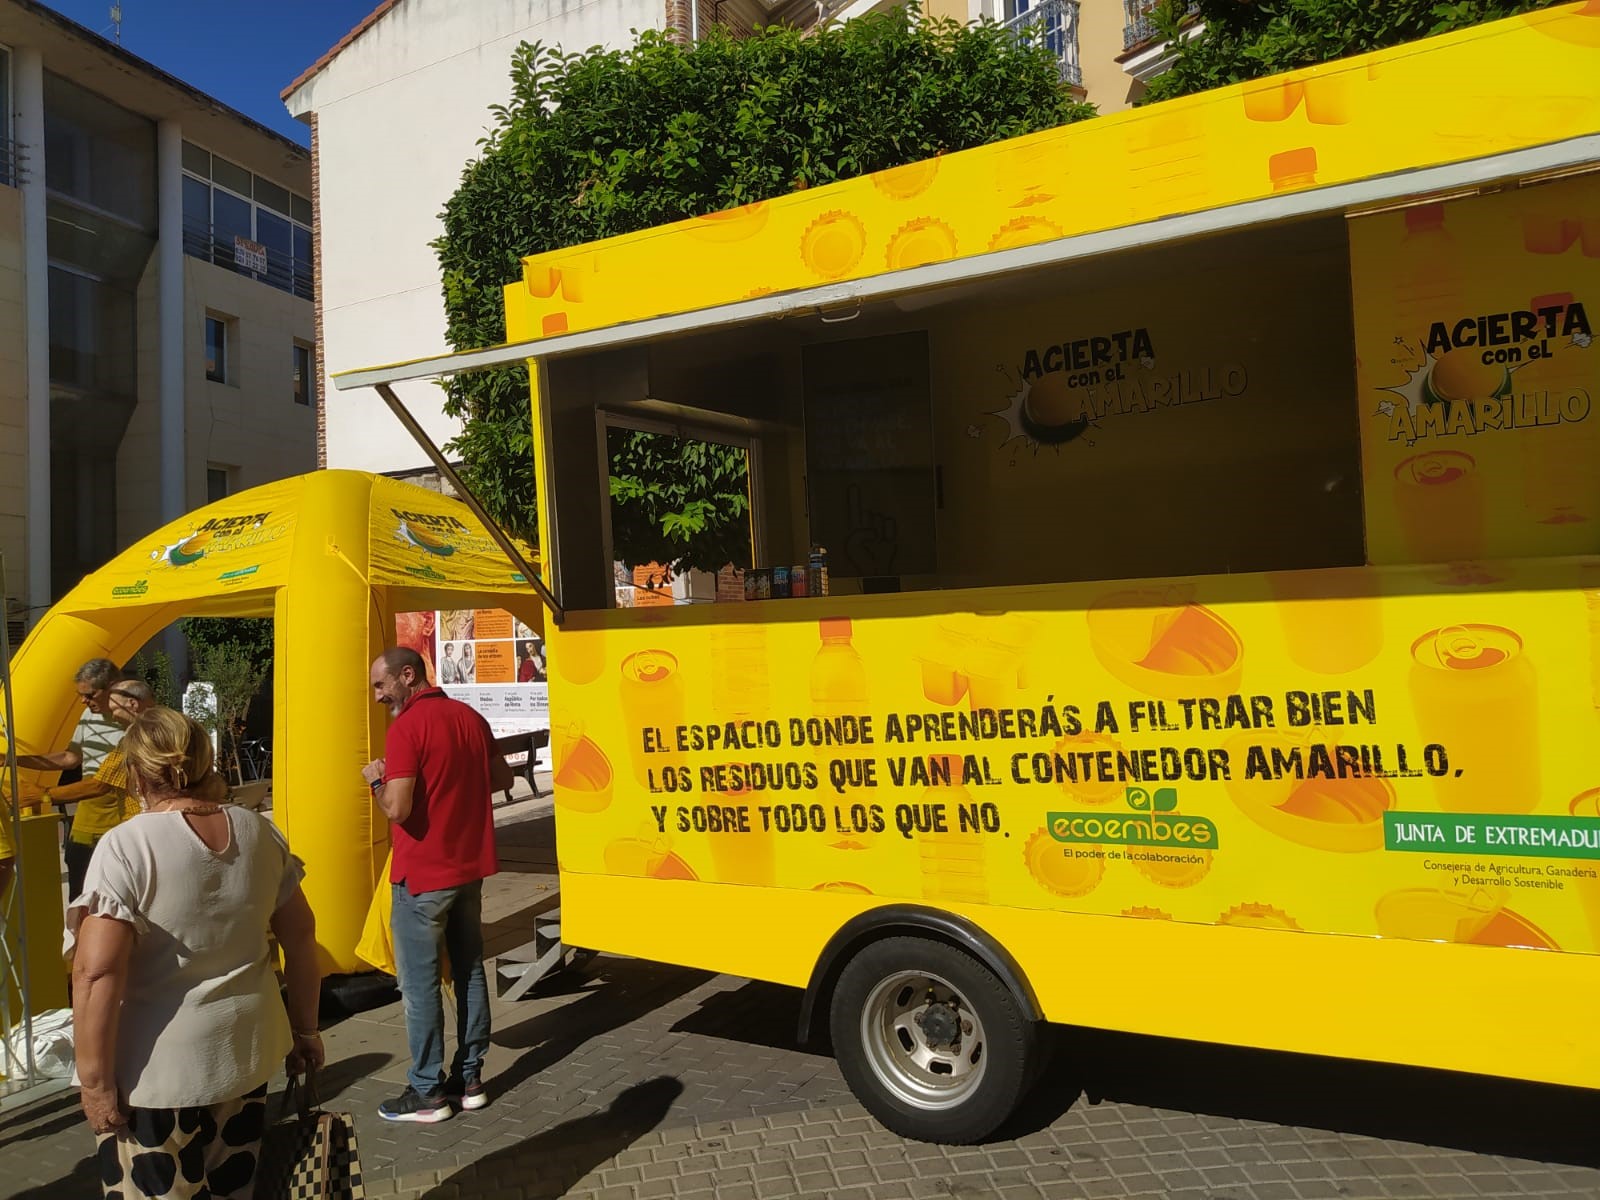 Image 1 of article La campaña de reciclaje de envases 'Acierta con el Amarillo' recalará en once municipios de Extremadura